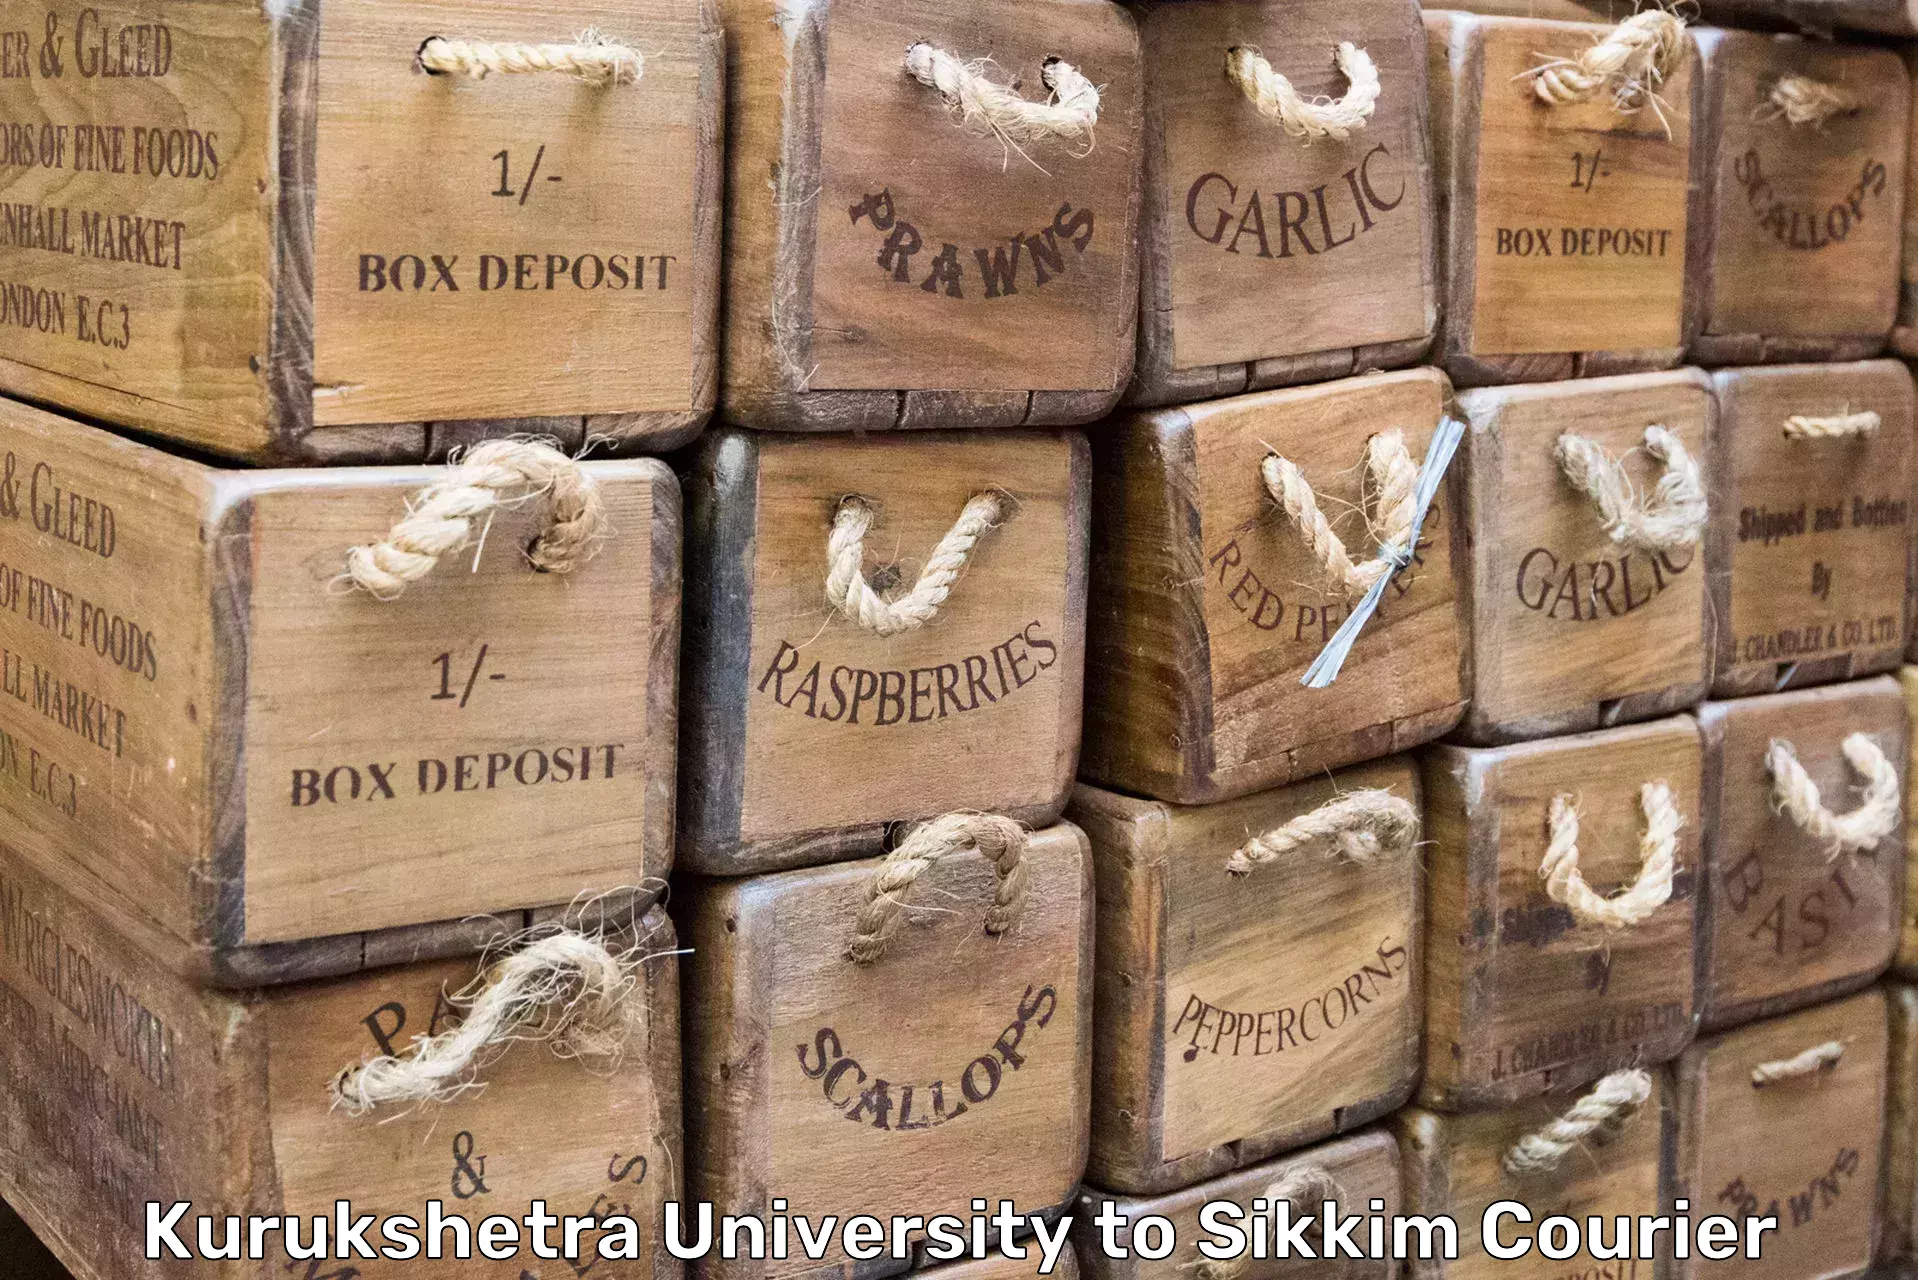 Moving and packing experts Kurukshetra University to Sikkim